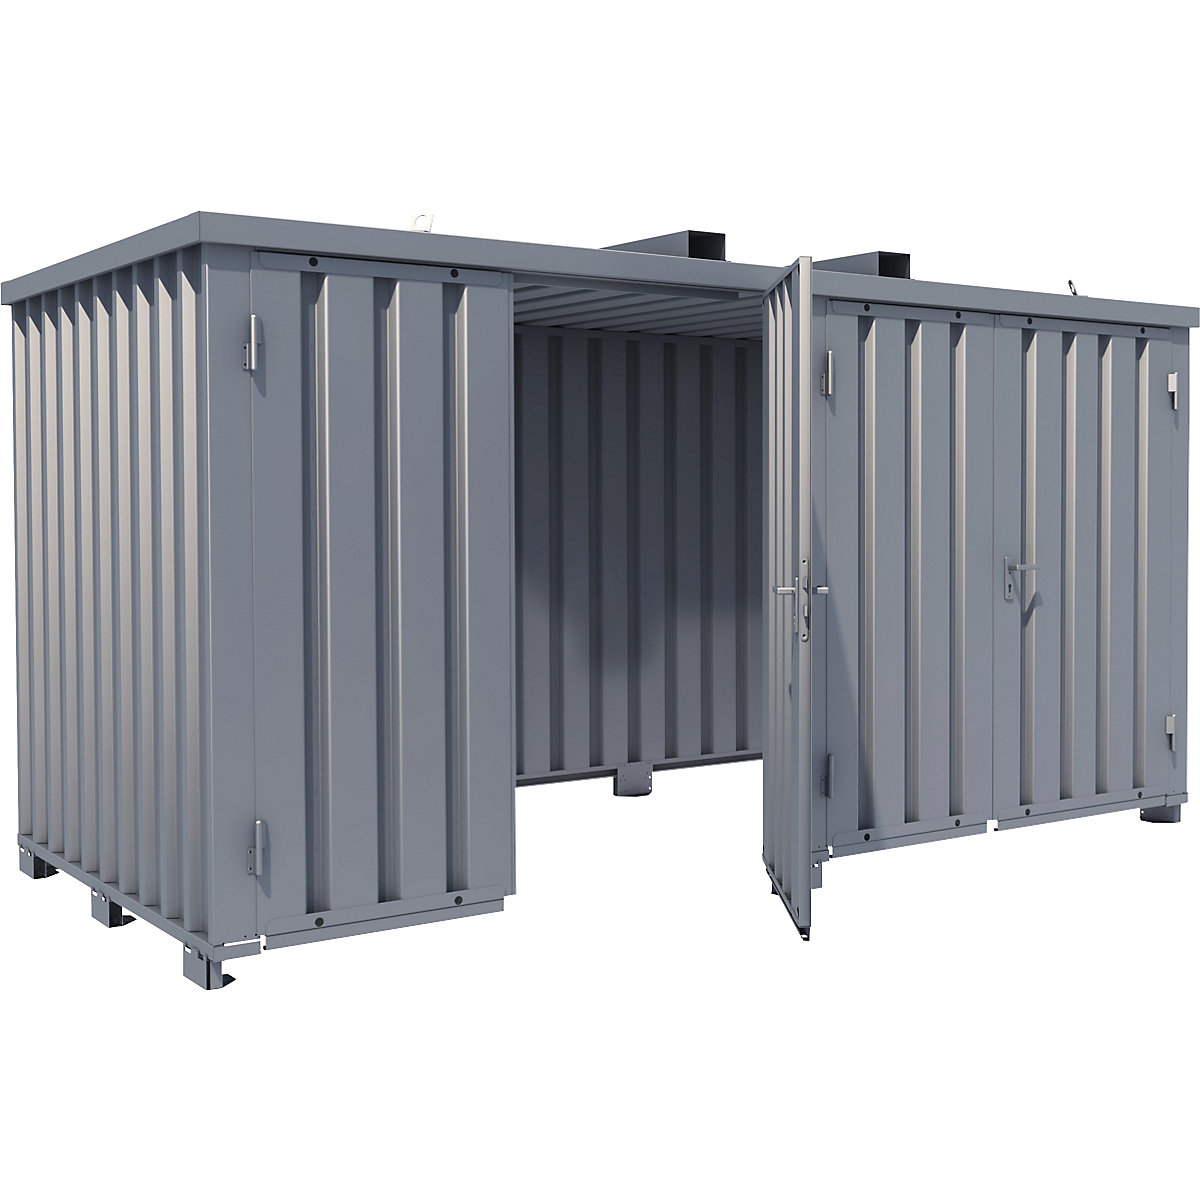 Container per bombole di gas, senza pavimento, largh. x prof. esterne 2100 x 4100 mm-2